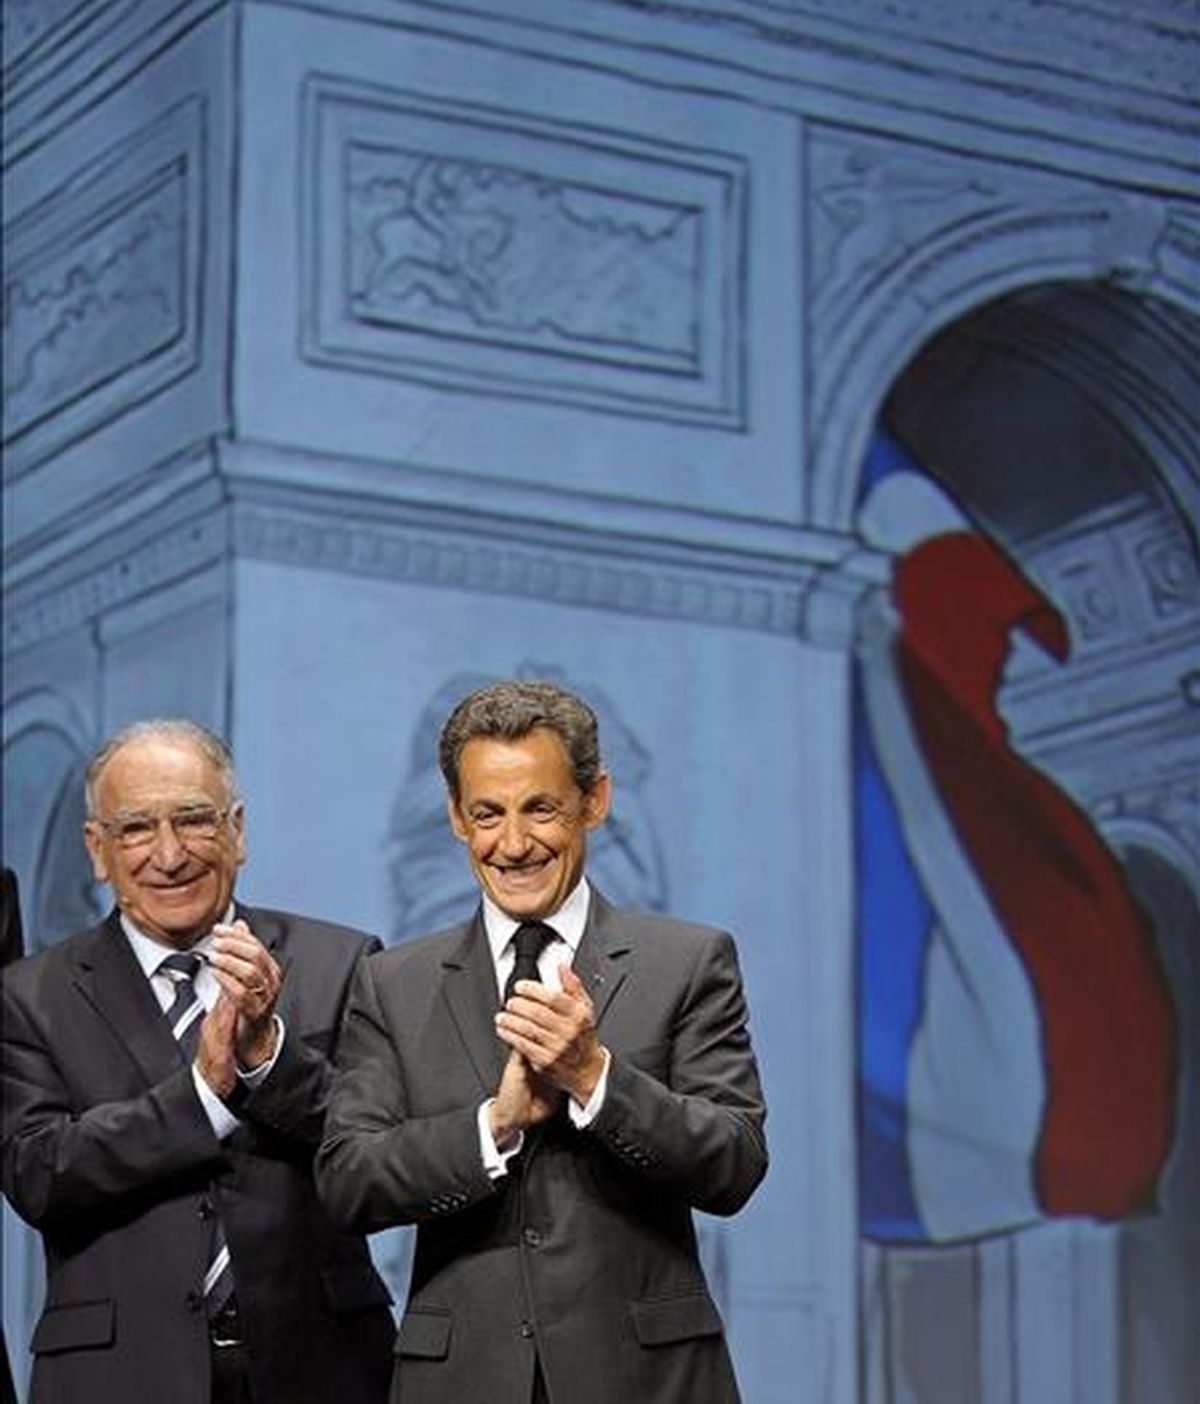 El presidente de la Federación Francesa de Fútbol, Jean-Pierre Escalettes, junto al presidente francés, Nicolás Sarkozy, durante la presentación de Francia como sede de la Eurocopa 2016 en Ginebra. EFE